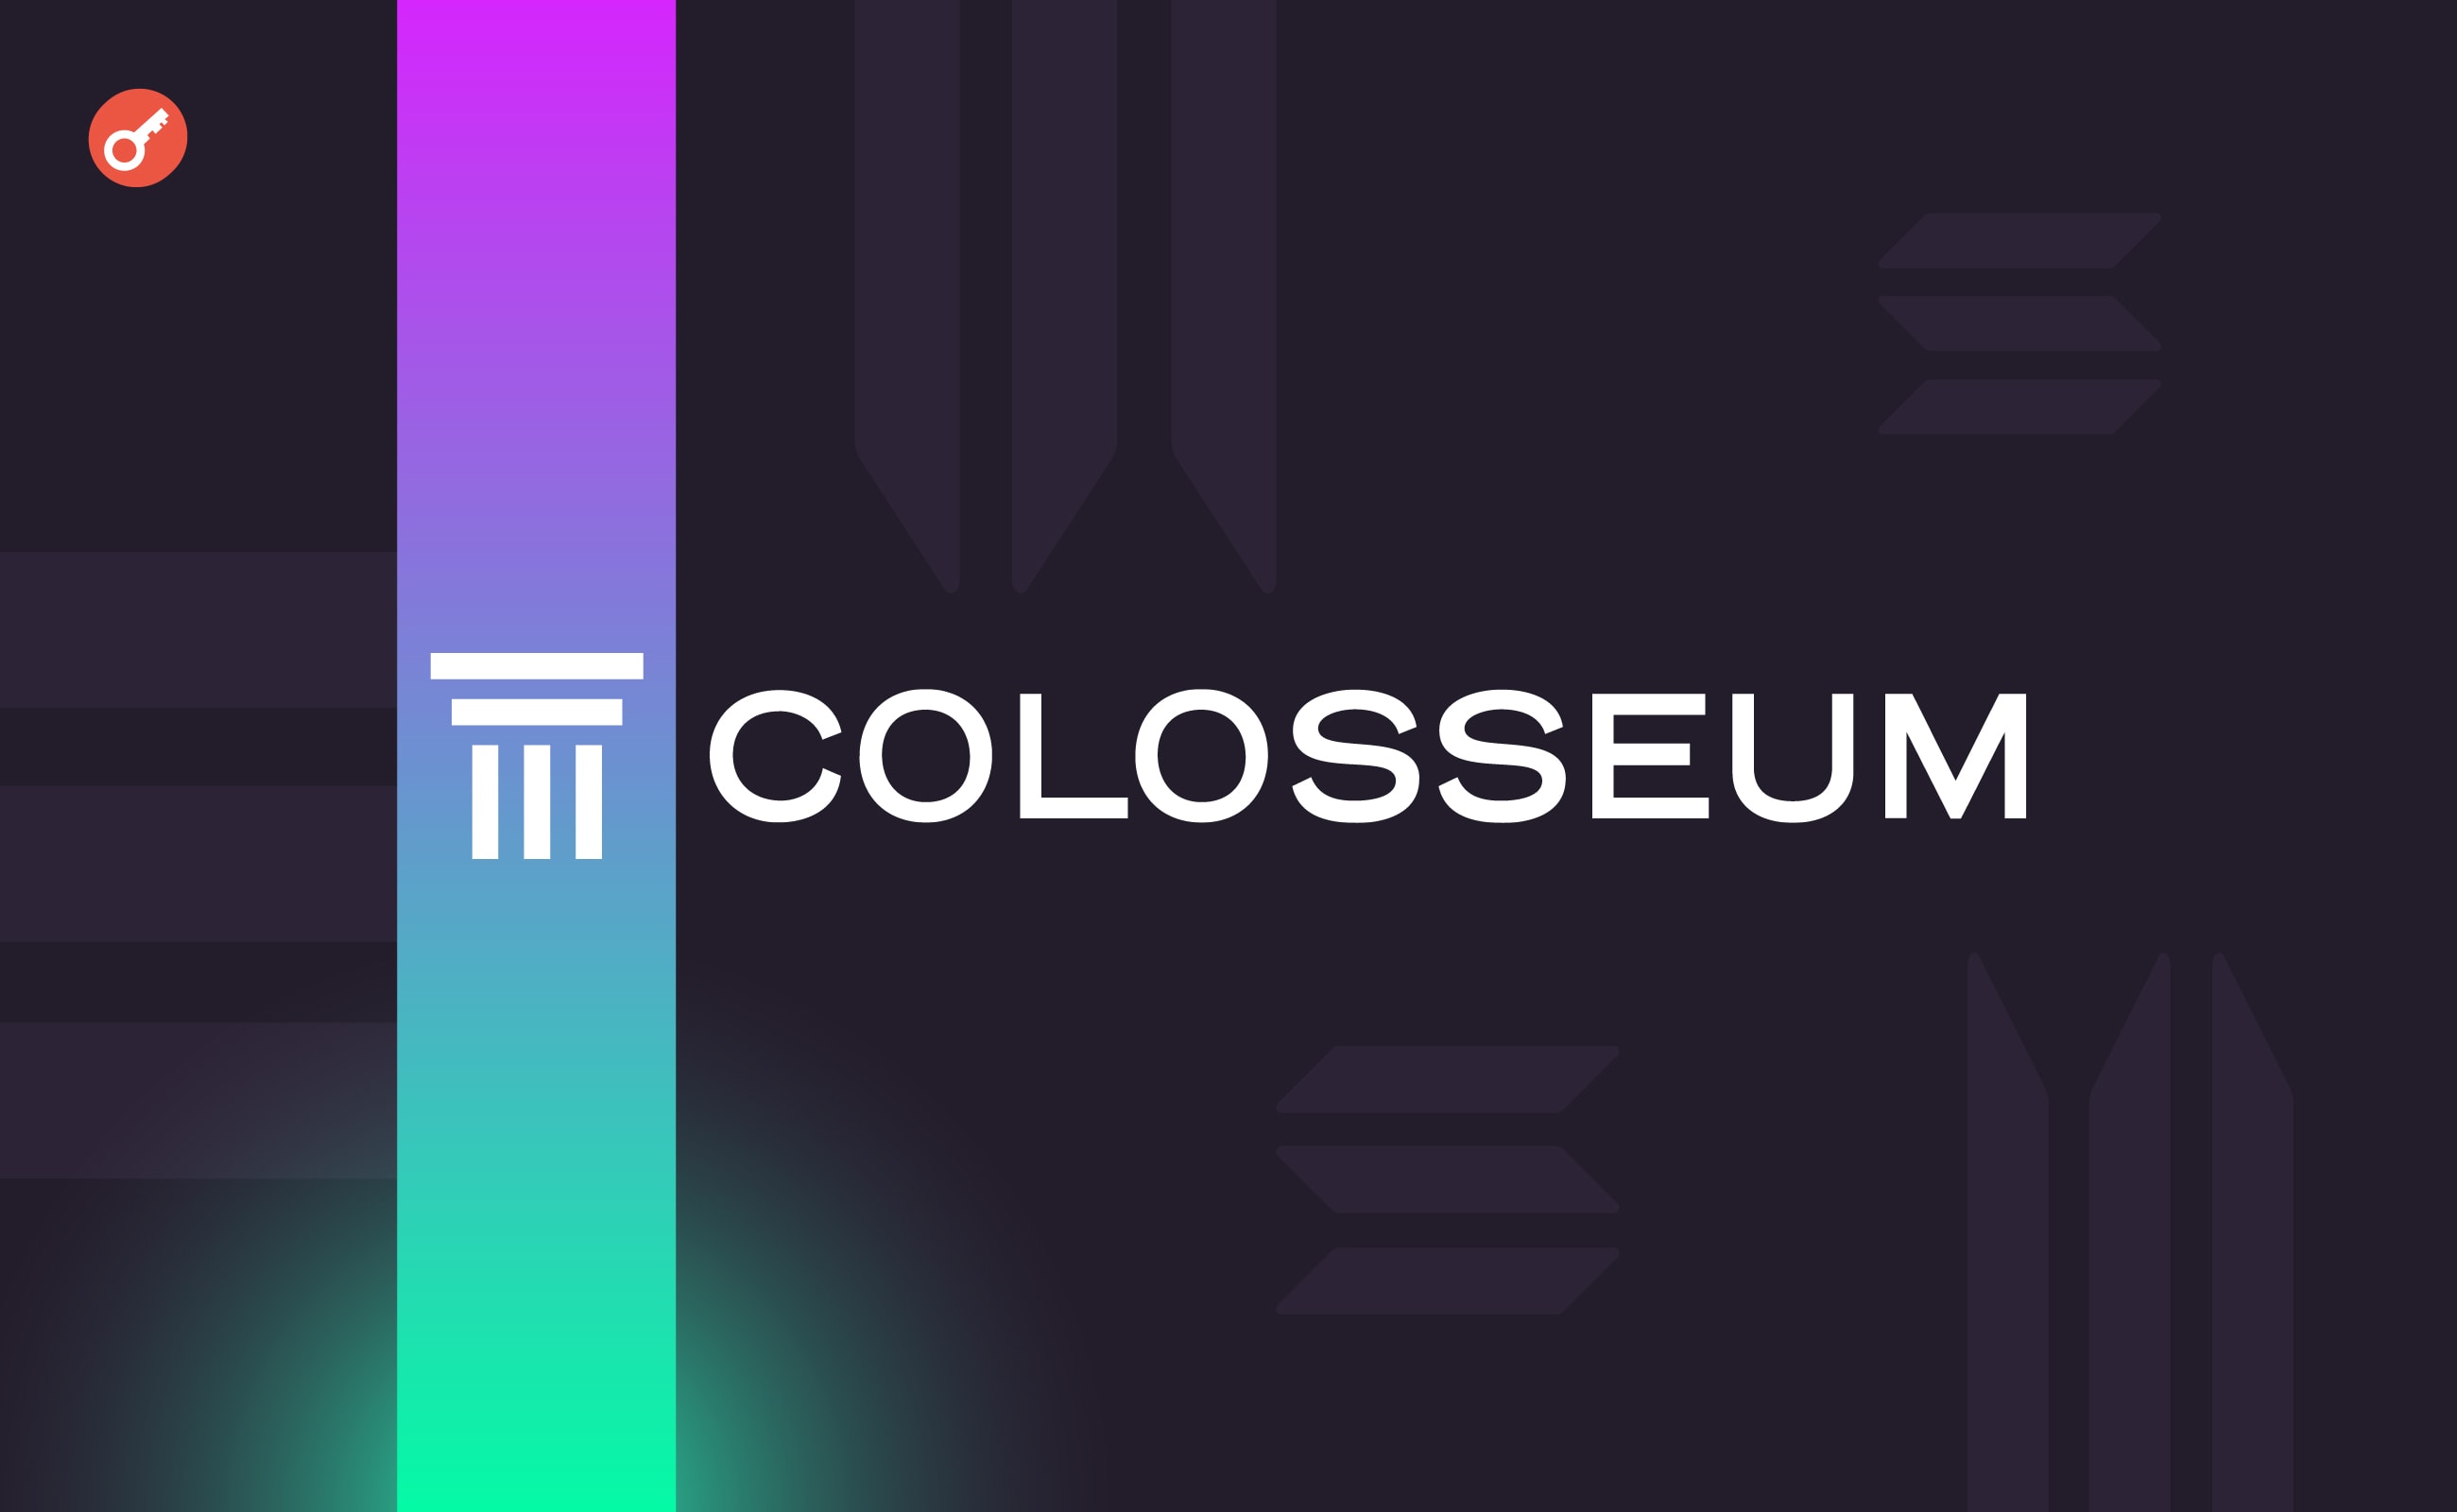 Розробники запустили нову платформу Colosseum для розвитку екосистеми Solana. Головний колаж новини.